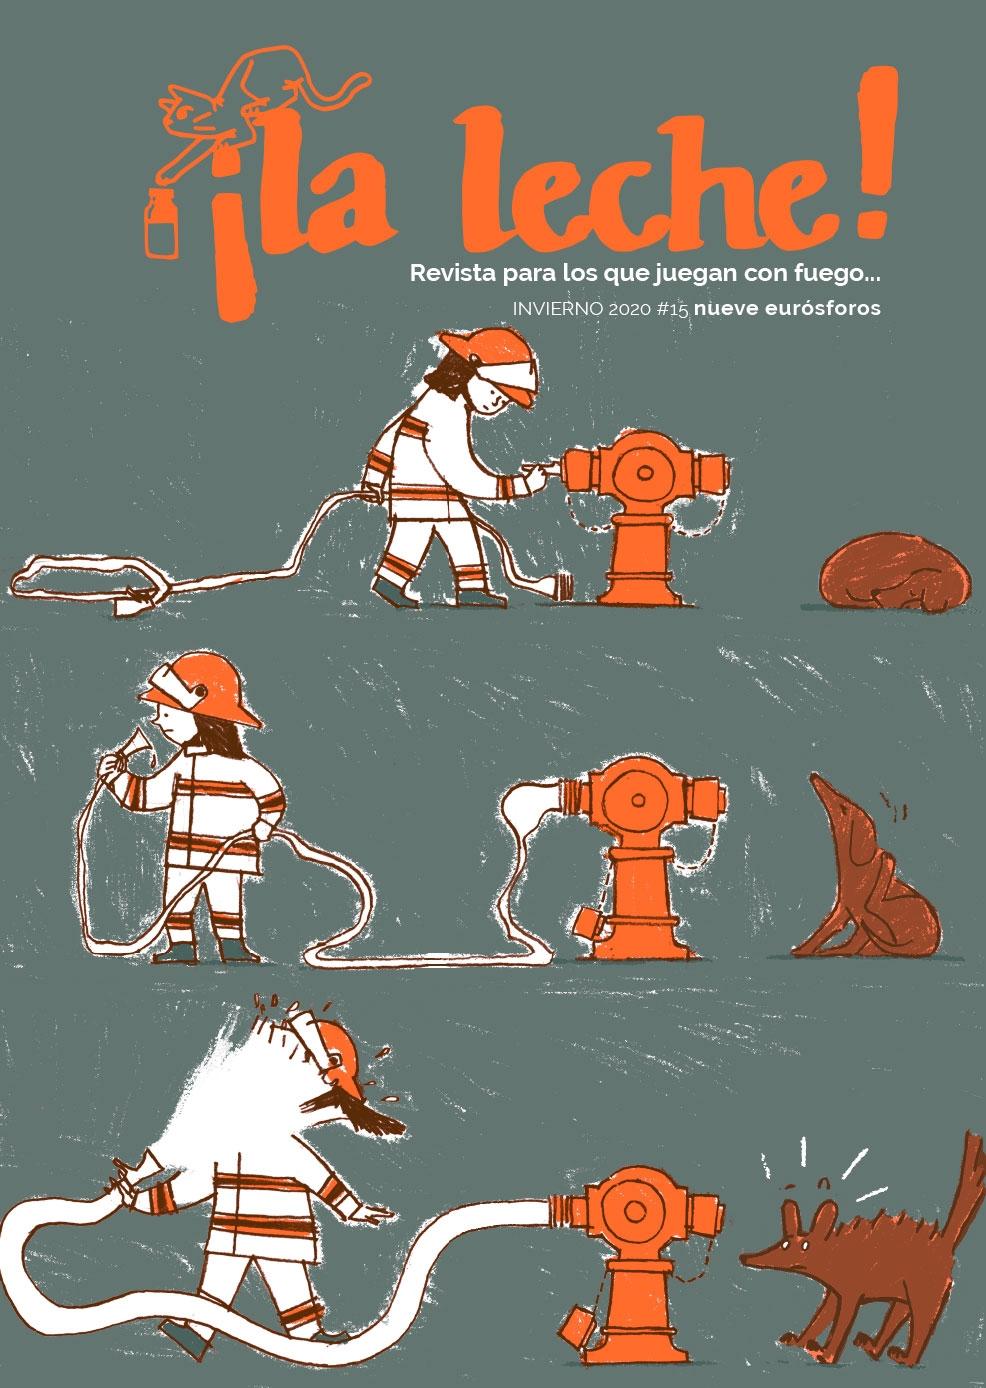 Revista ¡La leche! nº15 "Revista para los que juegan con fuego... | Invierno #15 + Encarte cómo diseñar tu caja de cerillas"